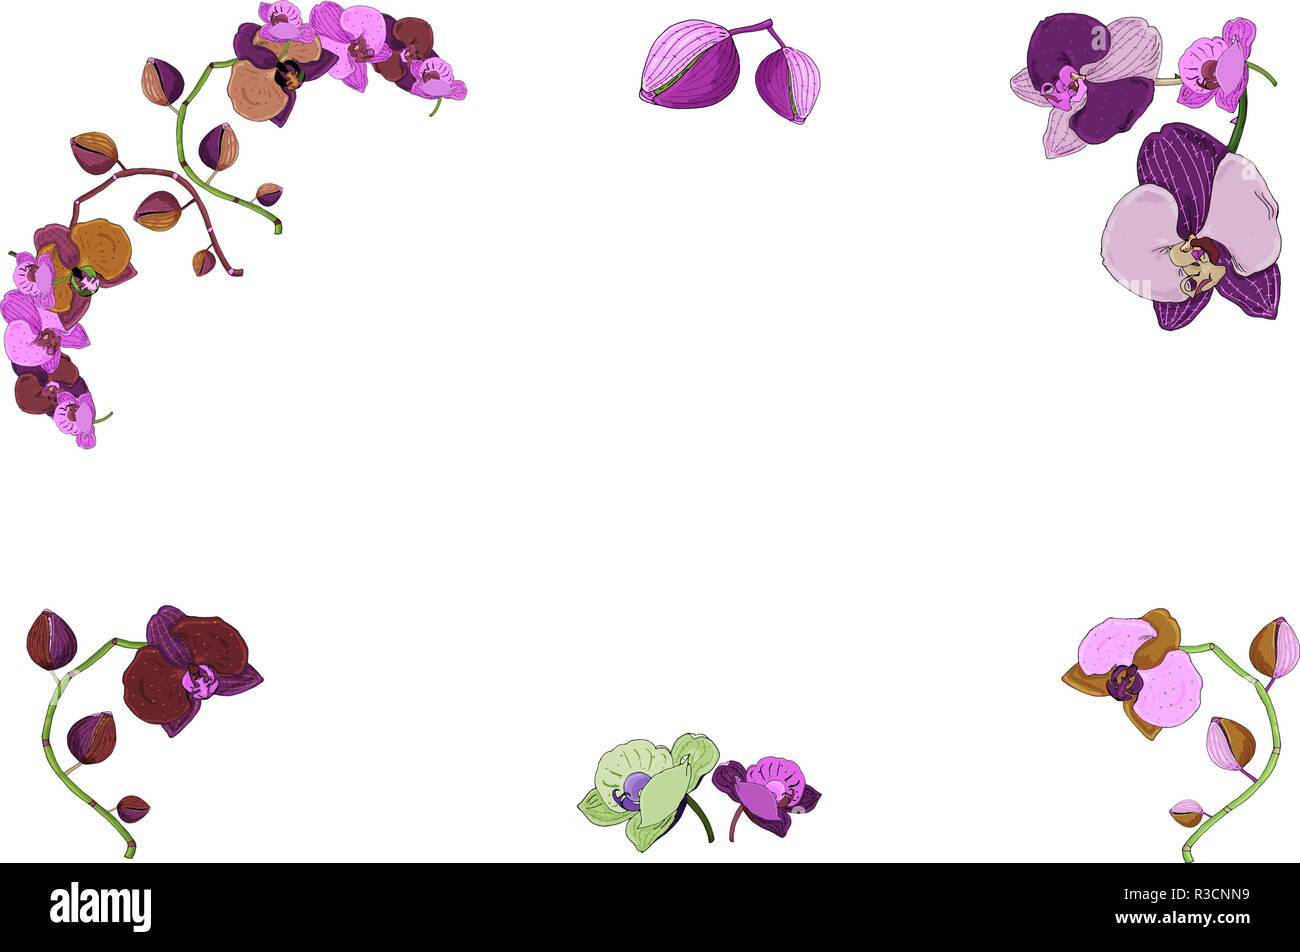 Châssis dessiné à la main de branches d'orchidées, fleurs, bourgeons. Vintage illustration botanique de Phalaenopsis plante tropical isolé de la tige sur le livre blanc backgroun Illustration de Vecteur